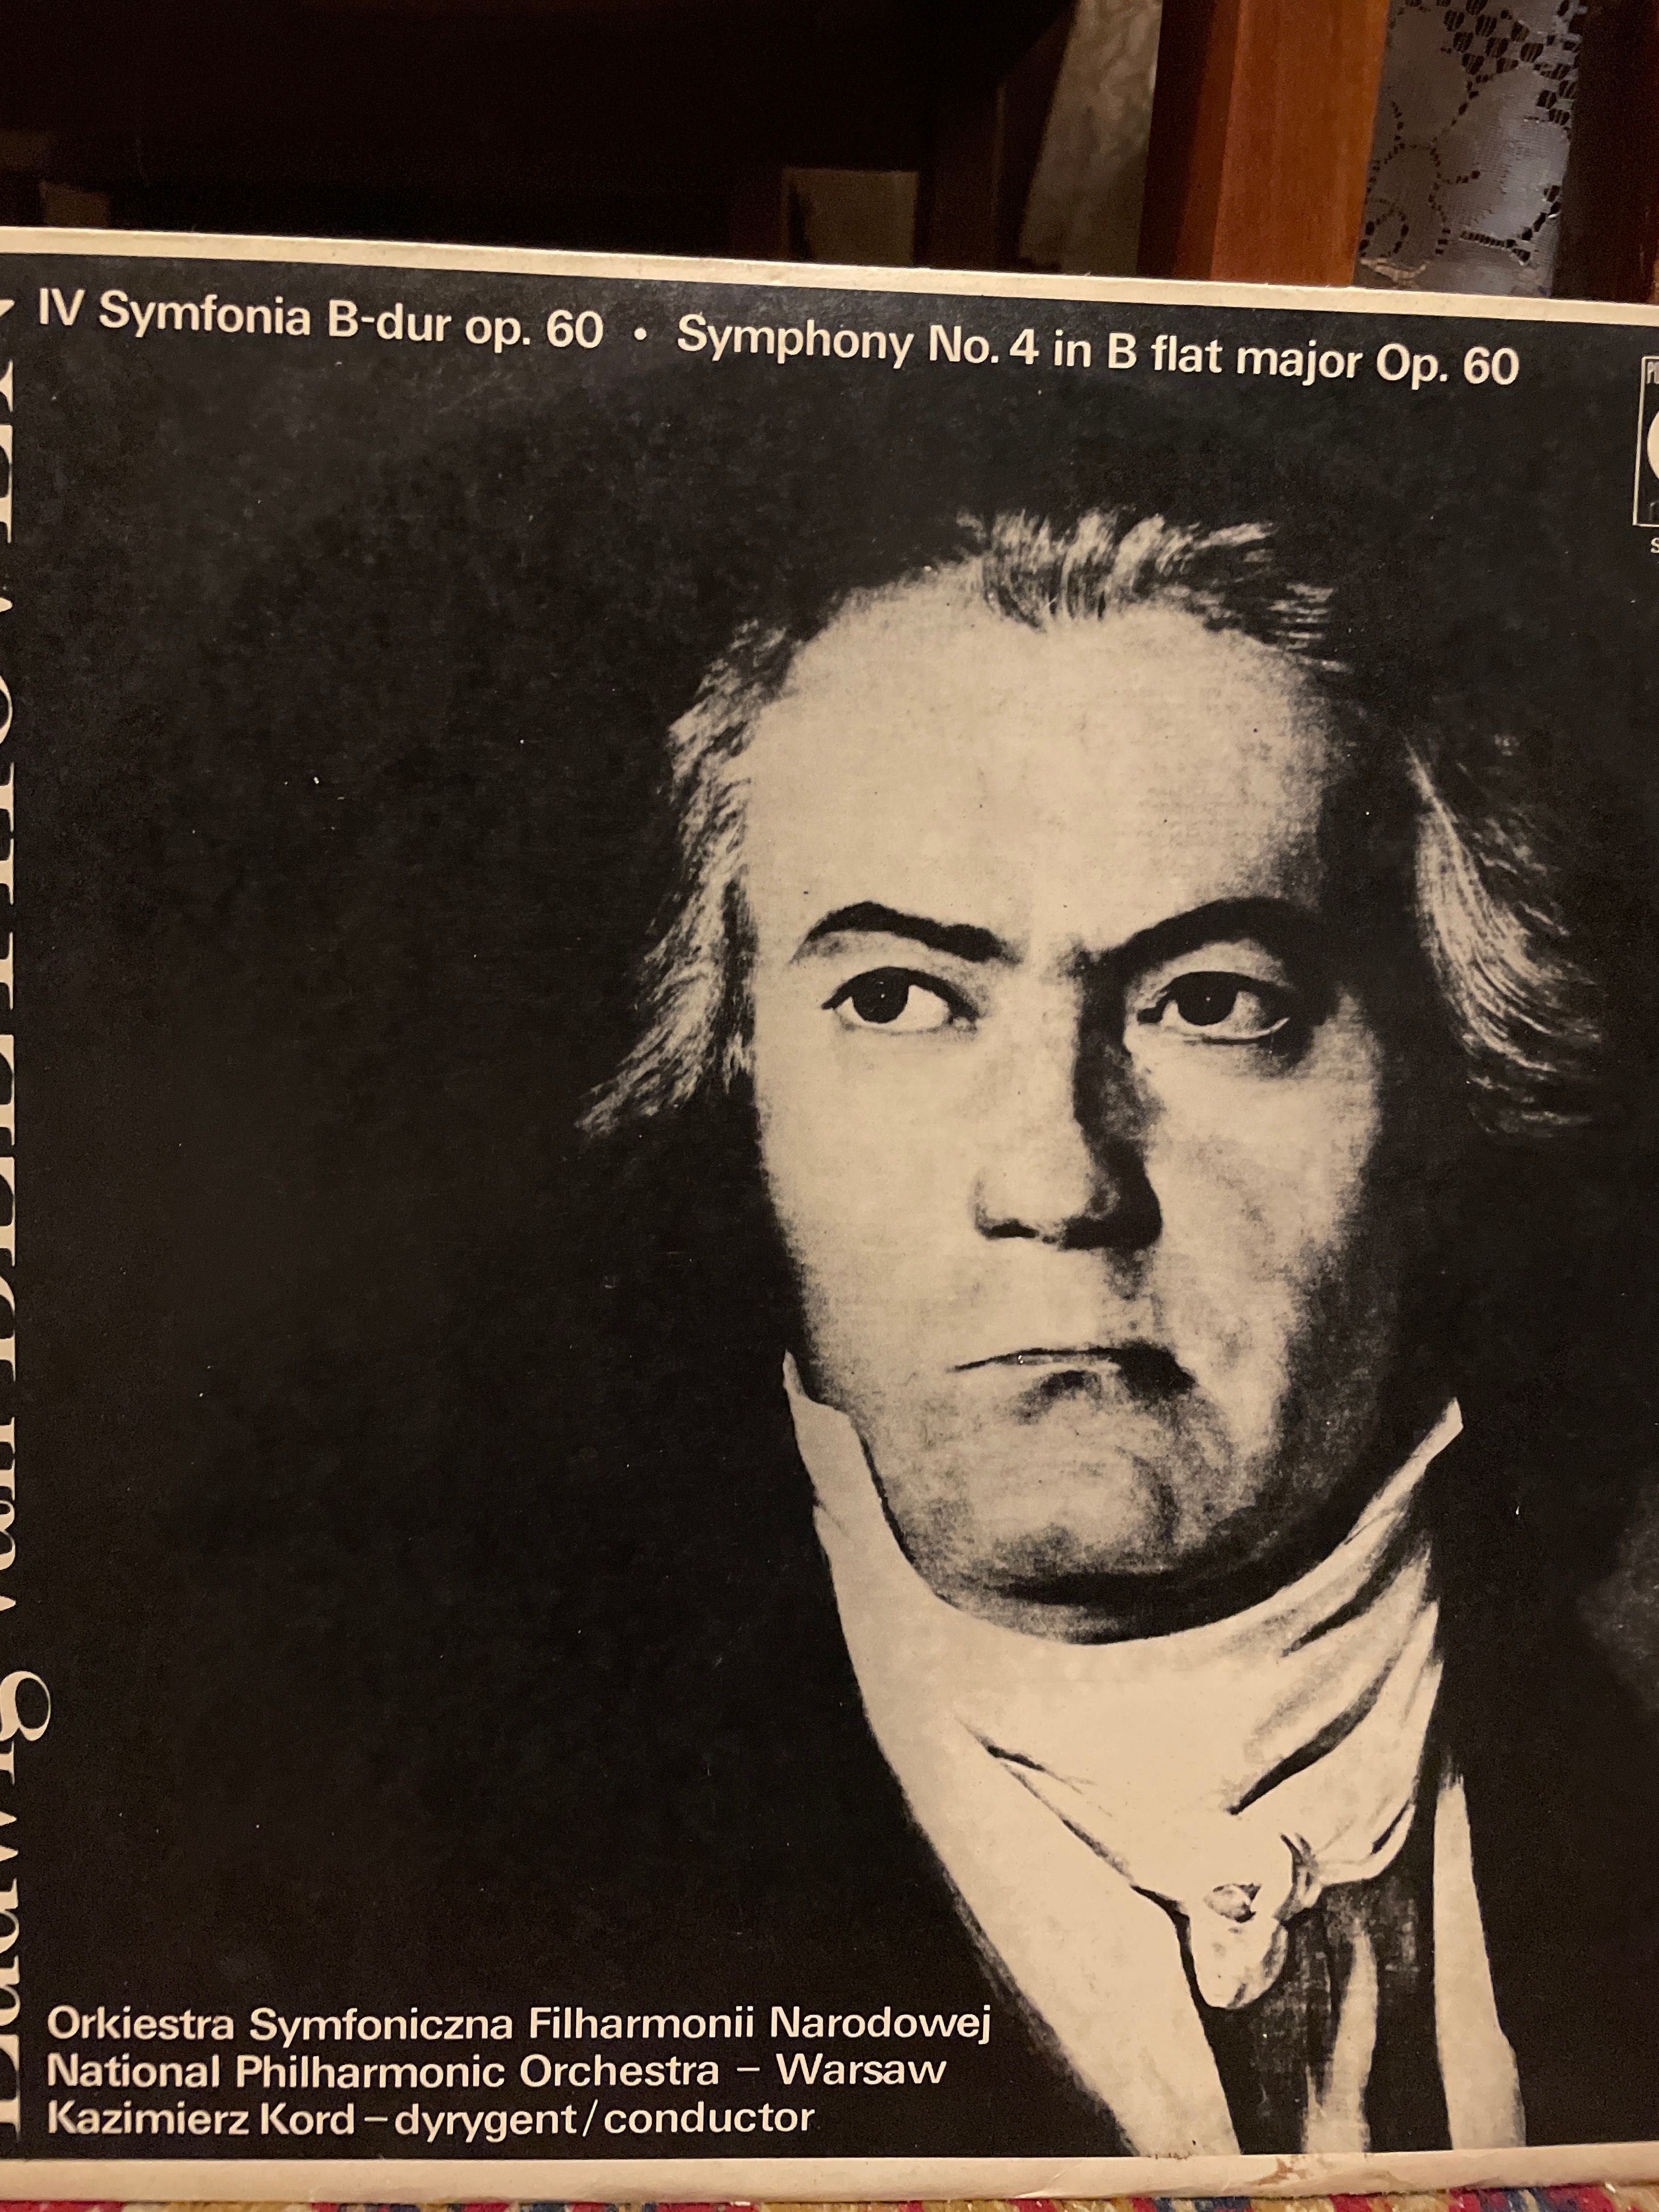 płyta winylowa Ludwig van Berthoven, IV Symfonia B-dur